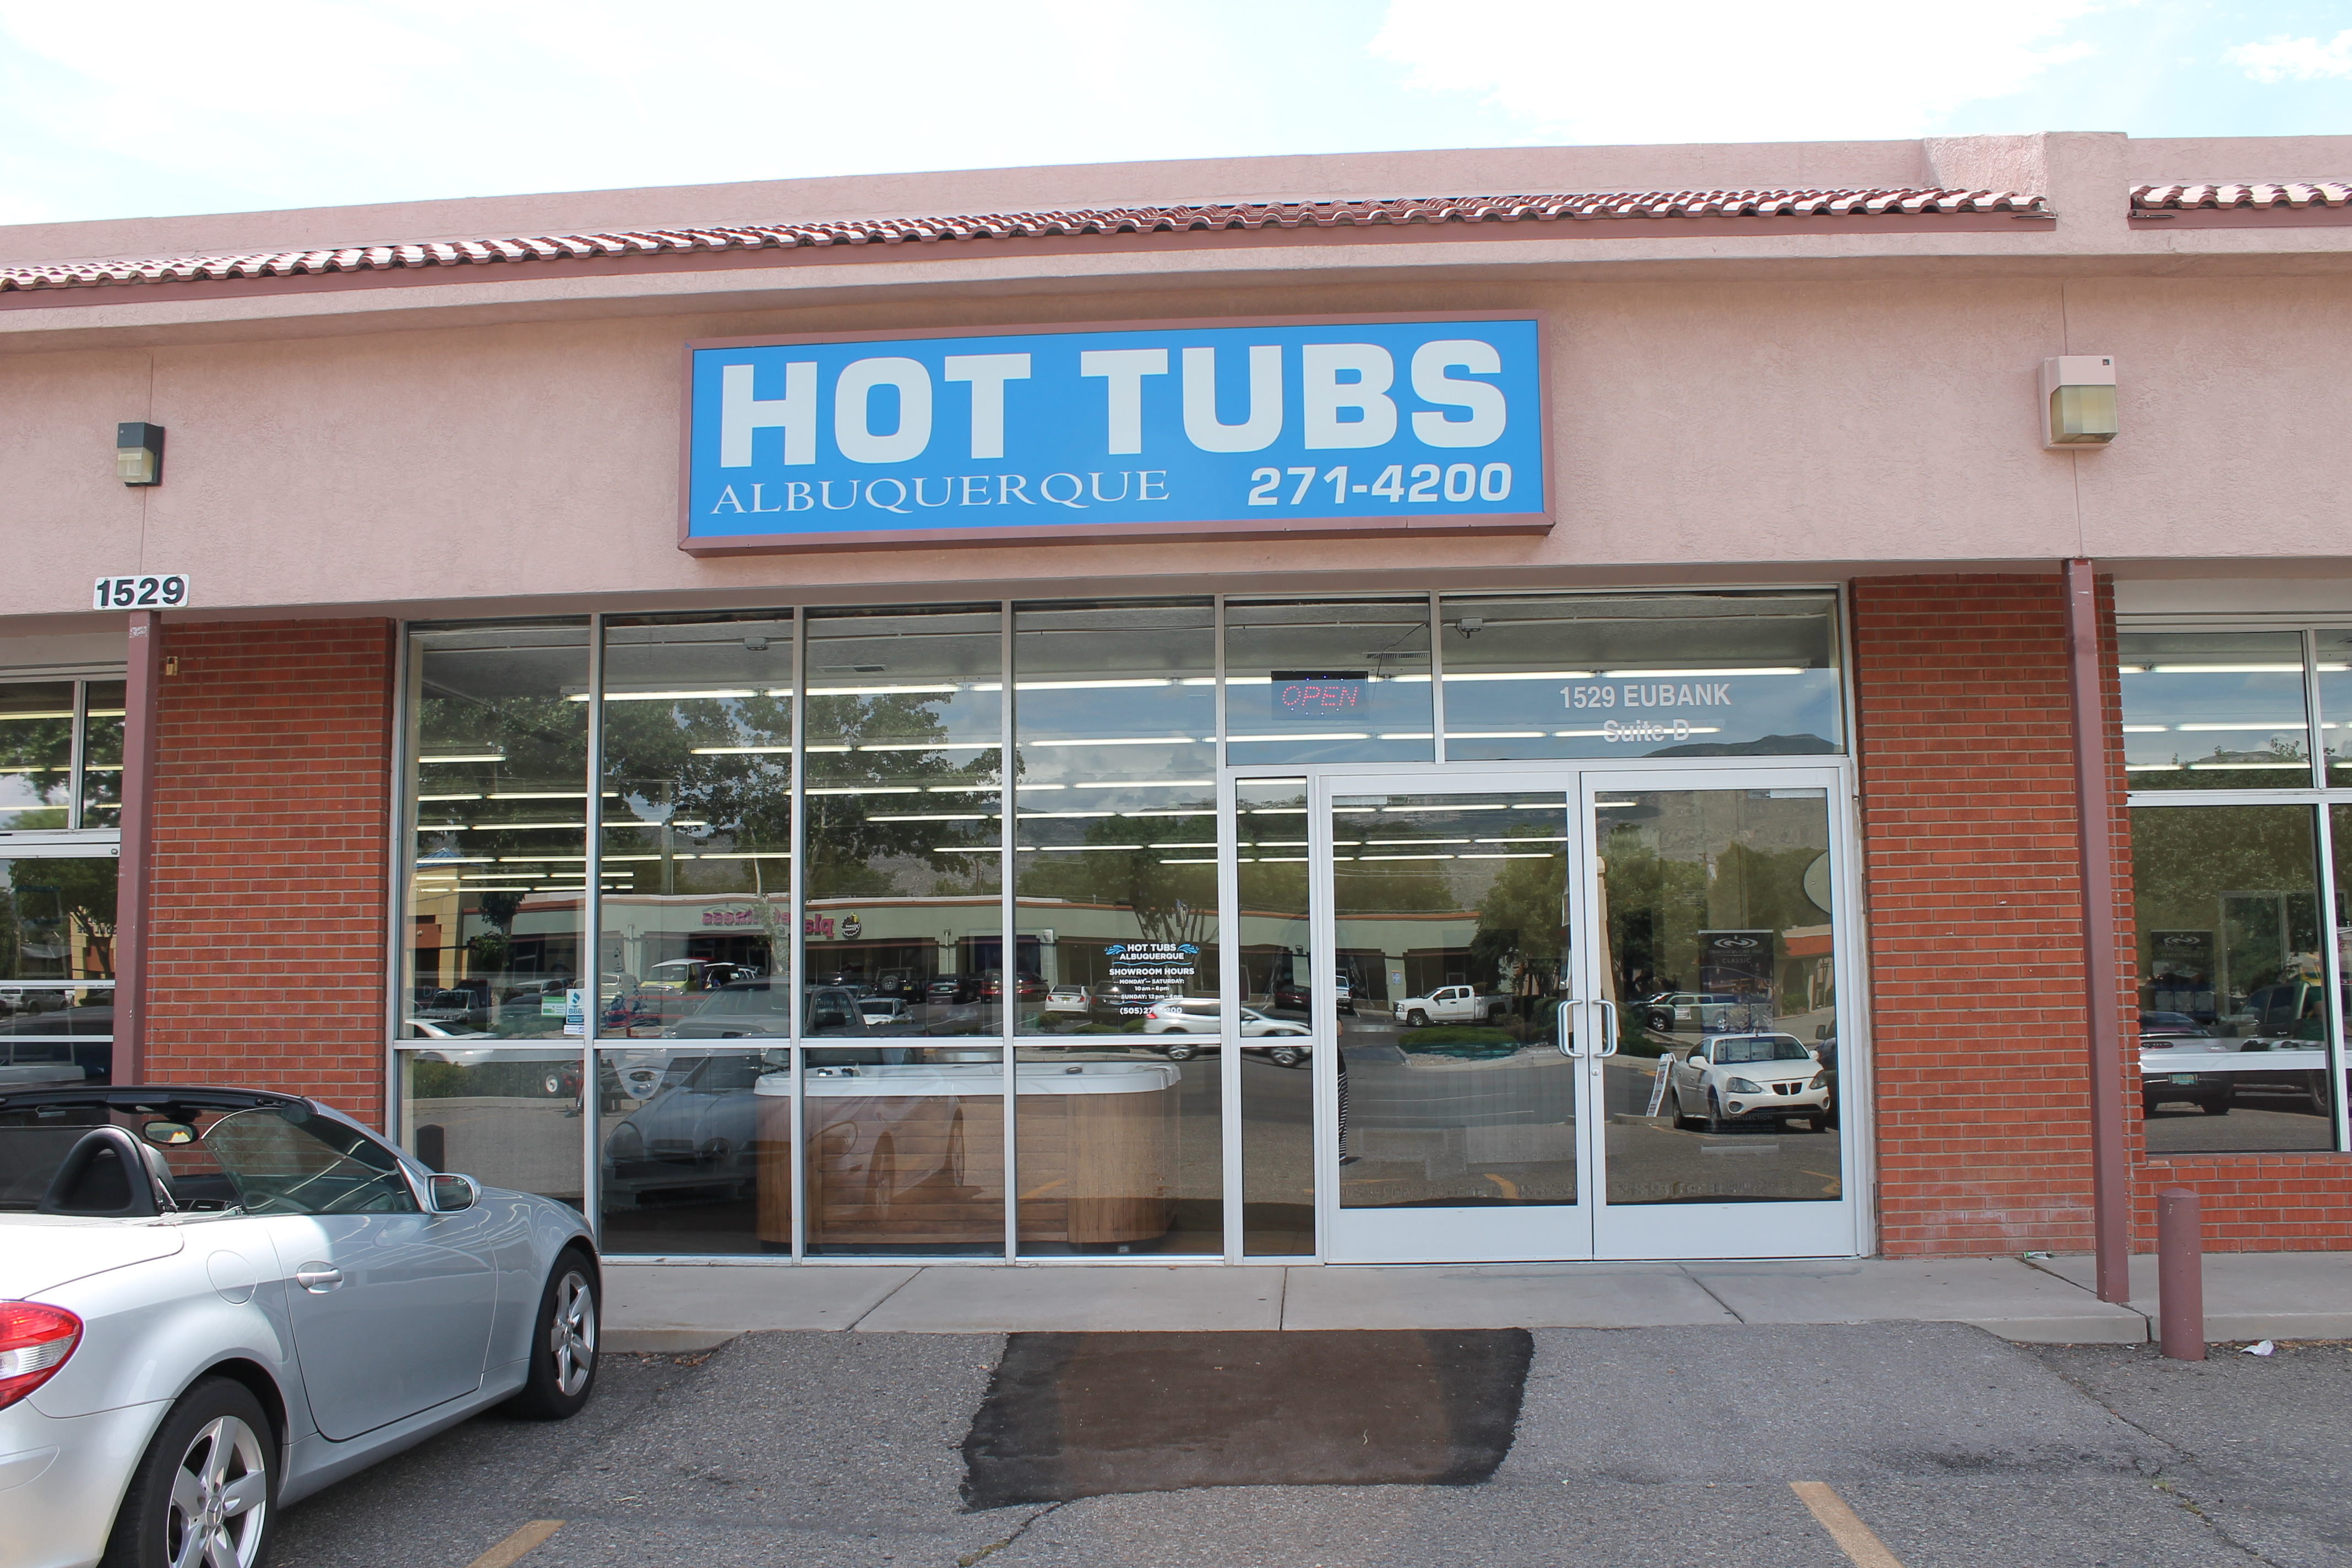 Hot Tubs Albuquerque Coupons near me in Albuquerque | 8coupons